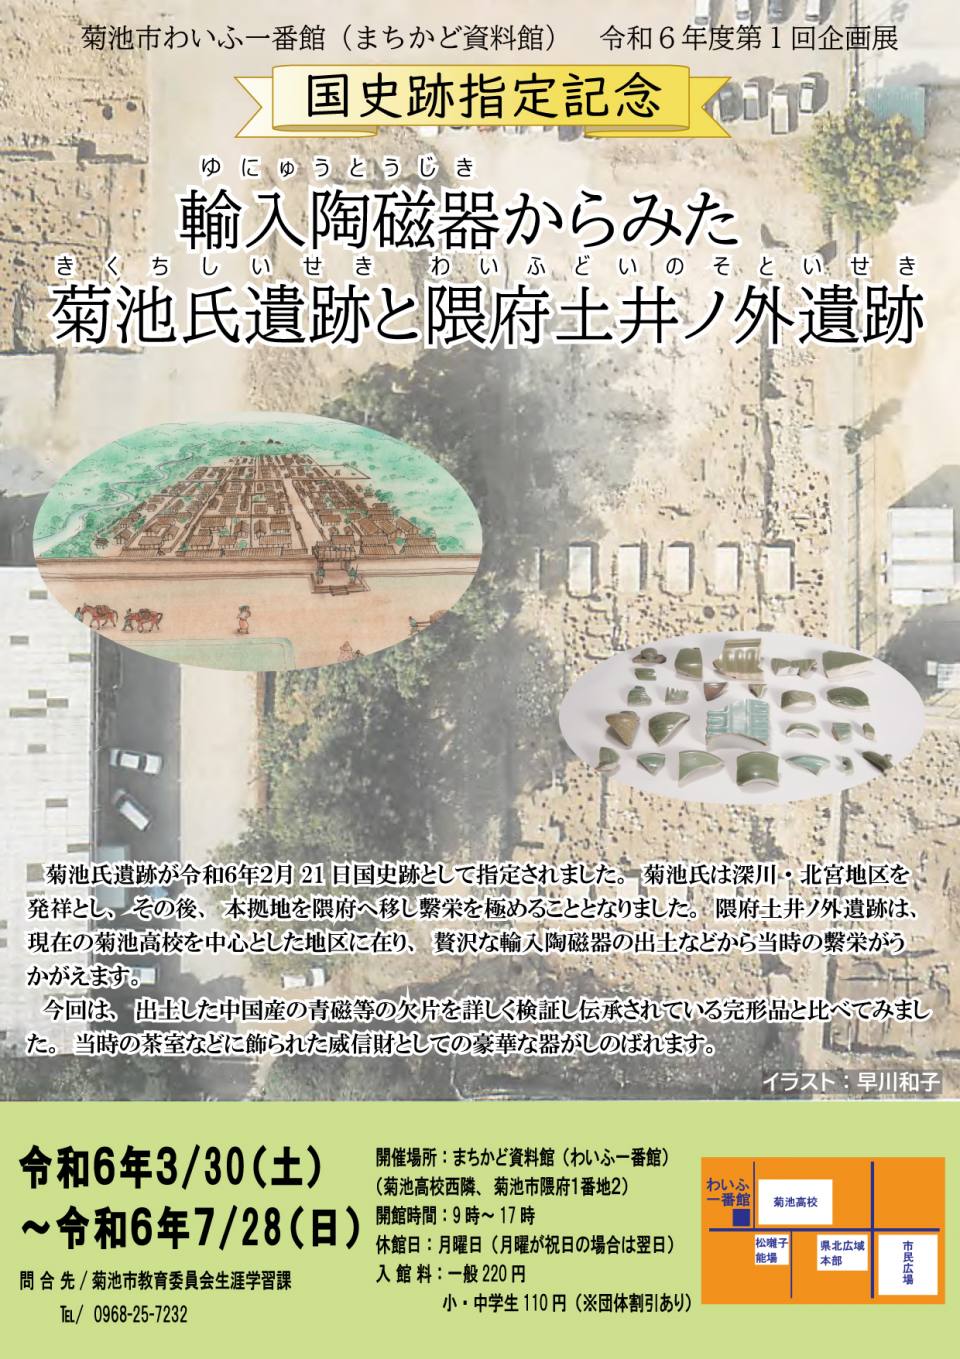 【国史跡指定記念】企画展「隈府土井ノ外遺跡」を開催いたします